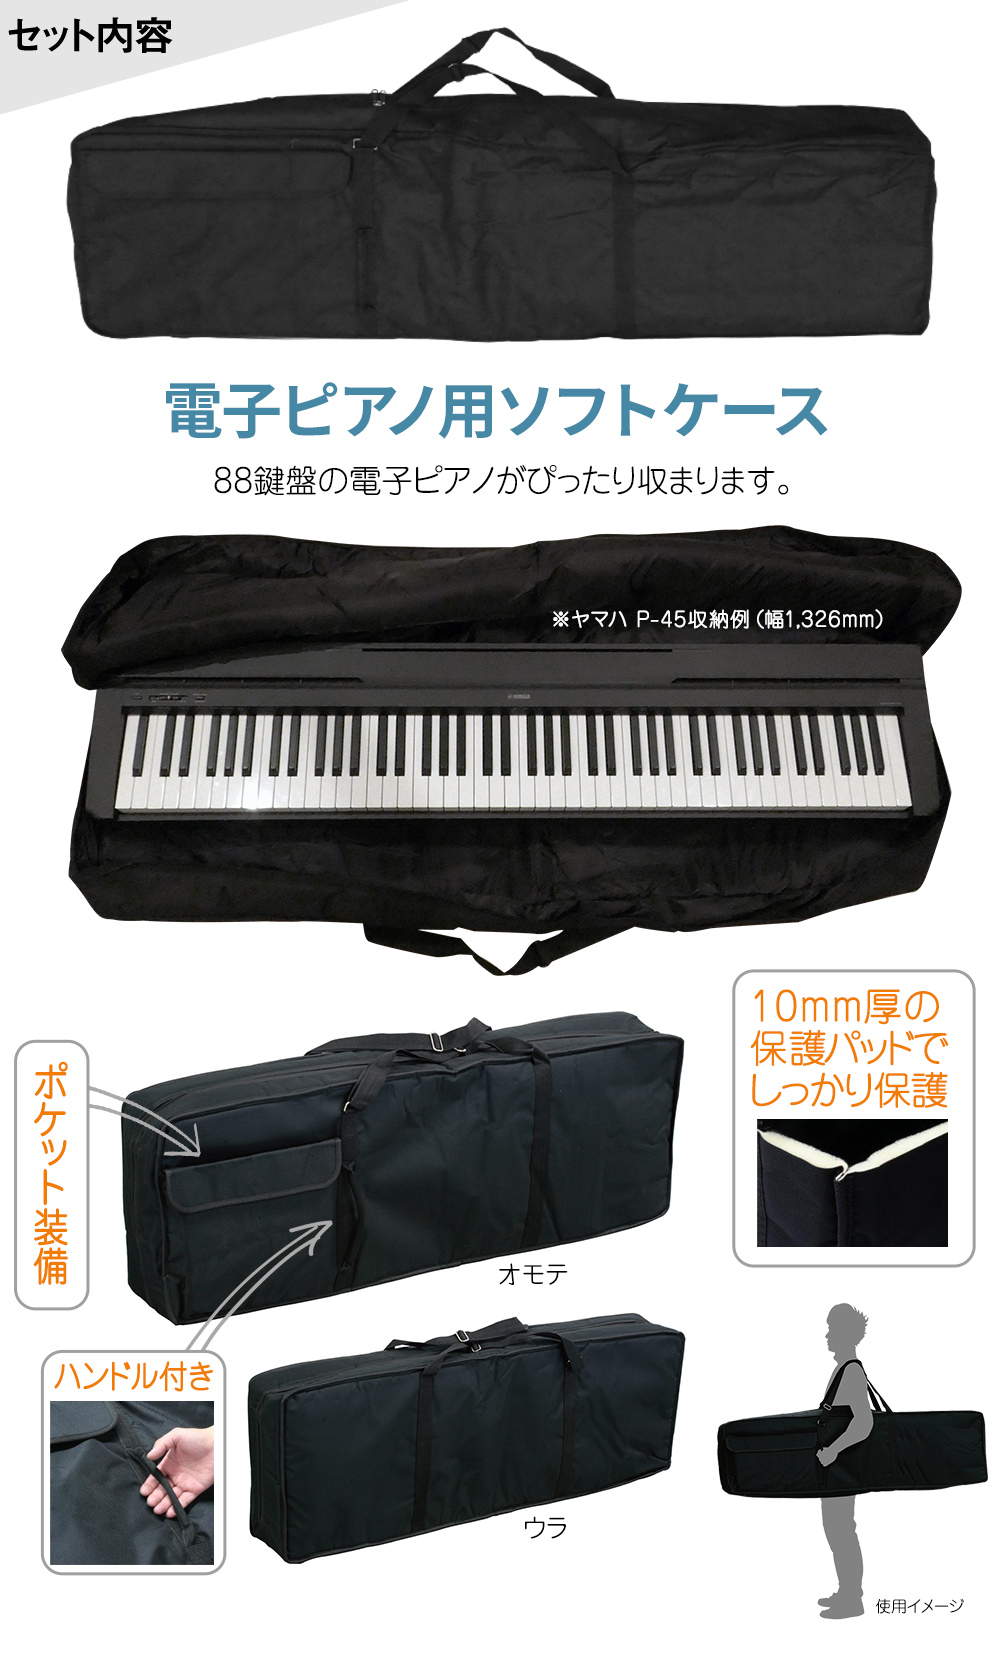 Piaggero NP-11 ヤマハロゴ入り専用ソフトケースSCC-55付 - 鍵盤楽器